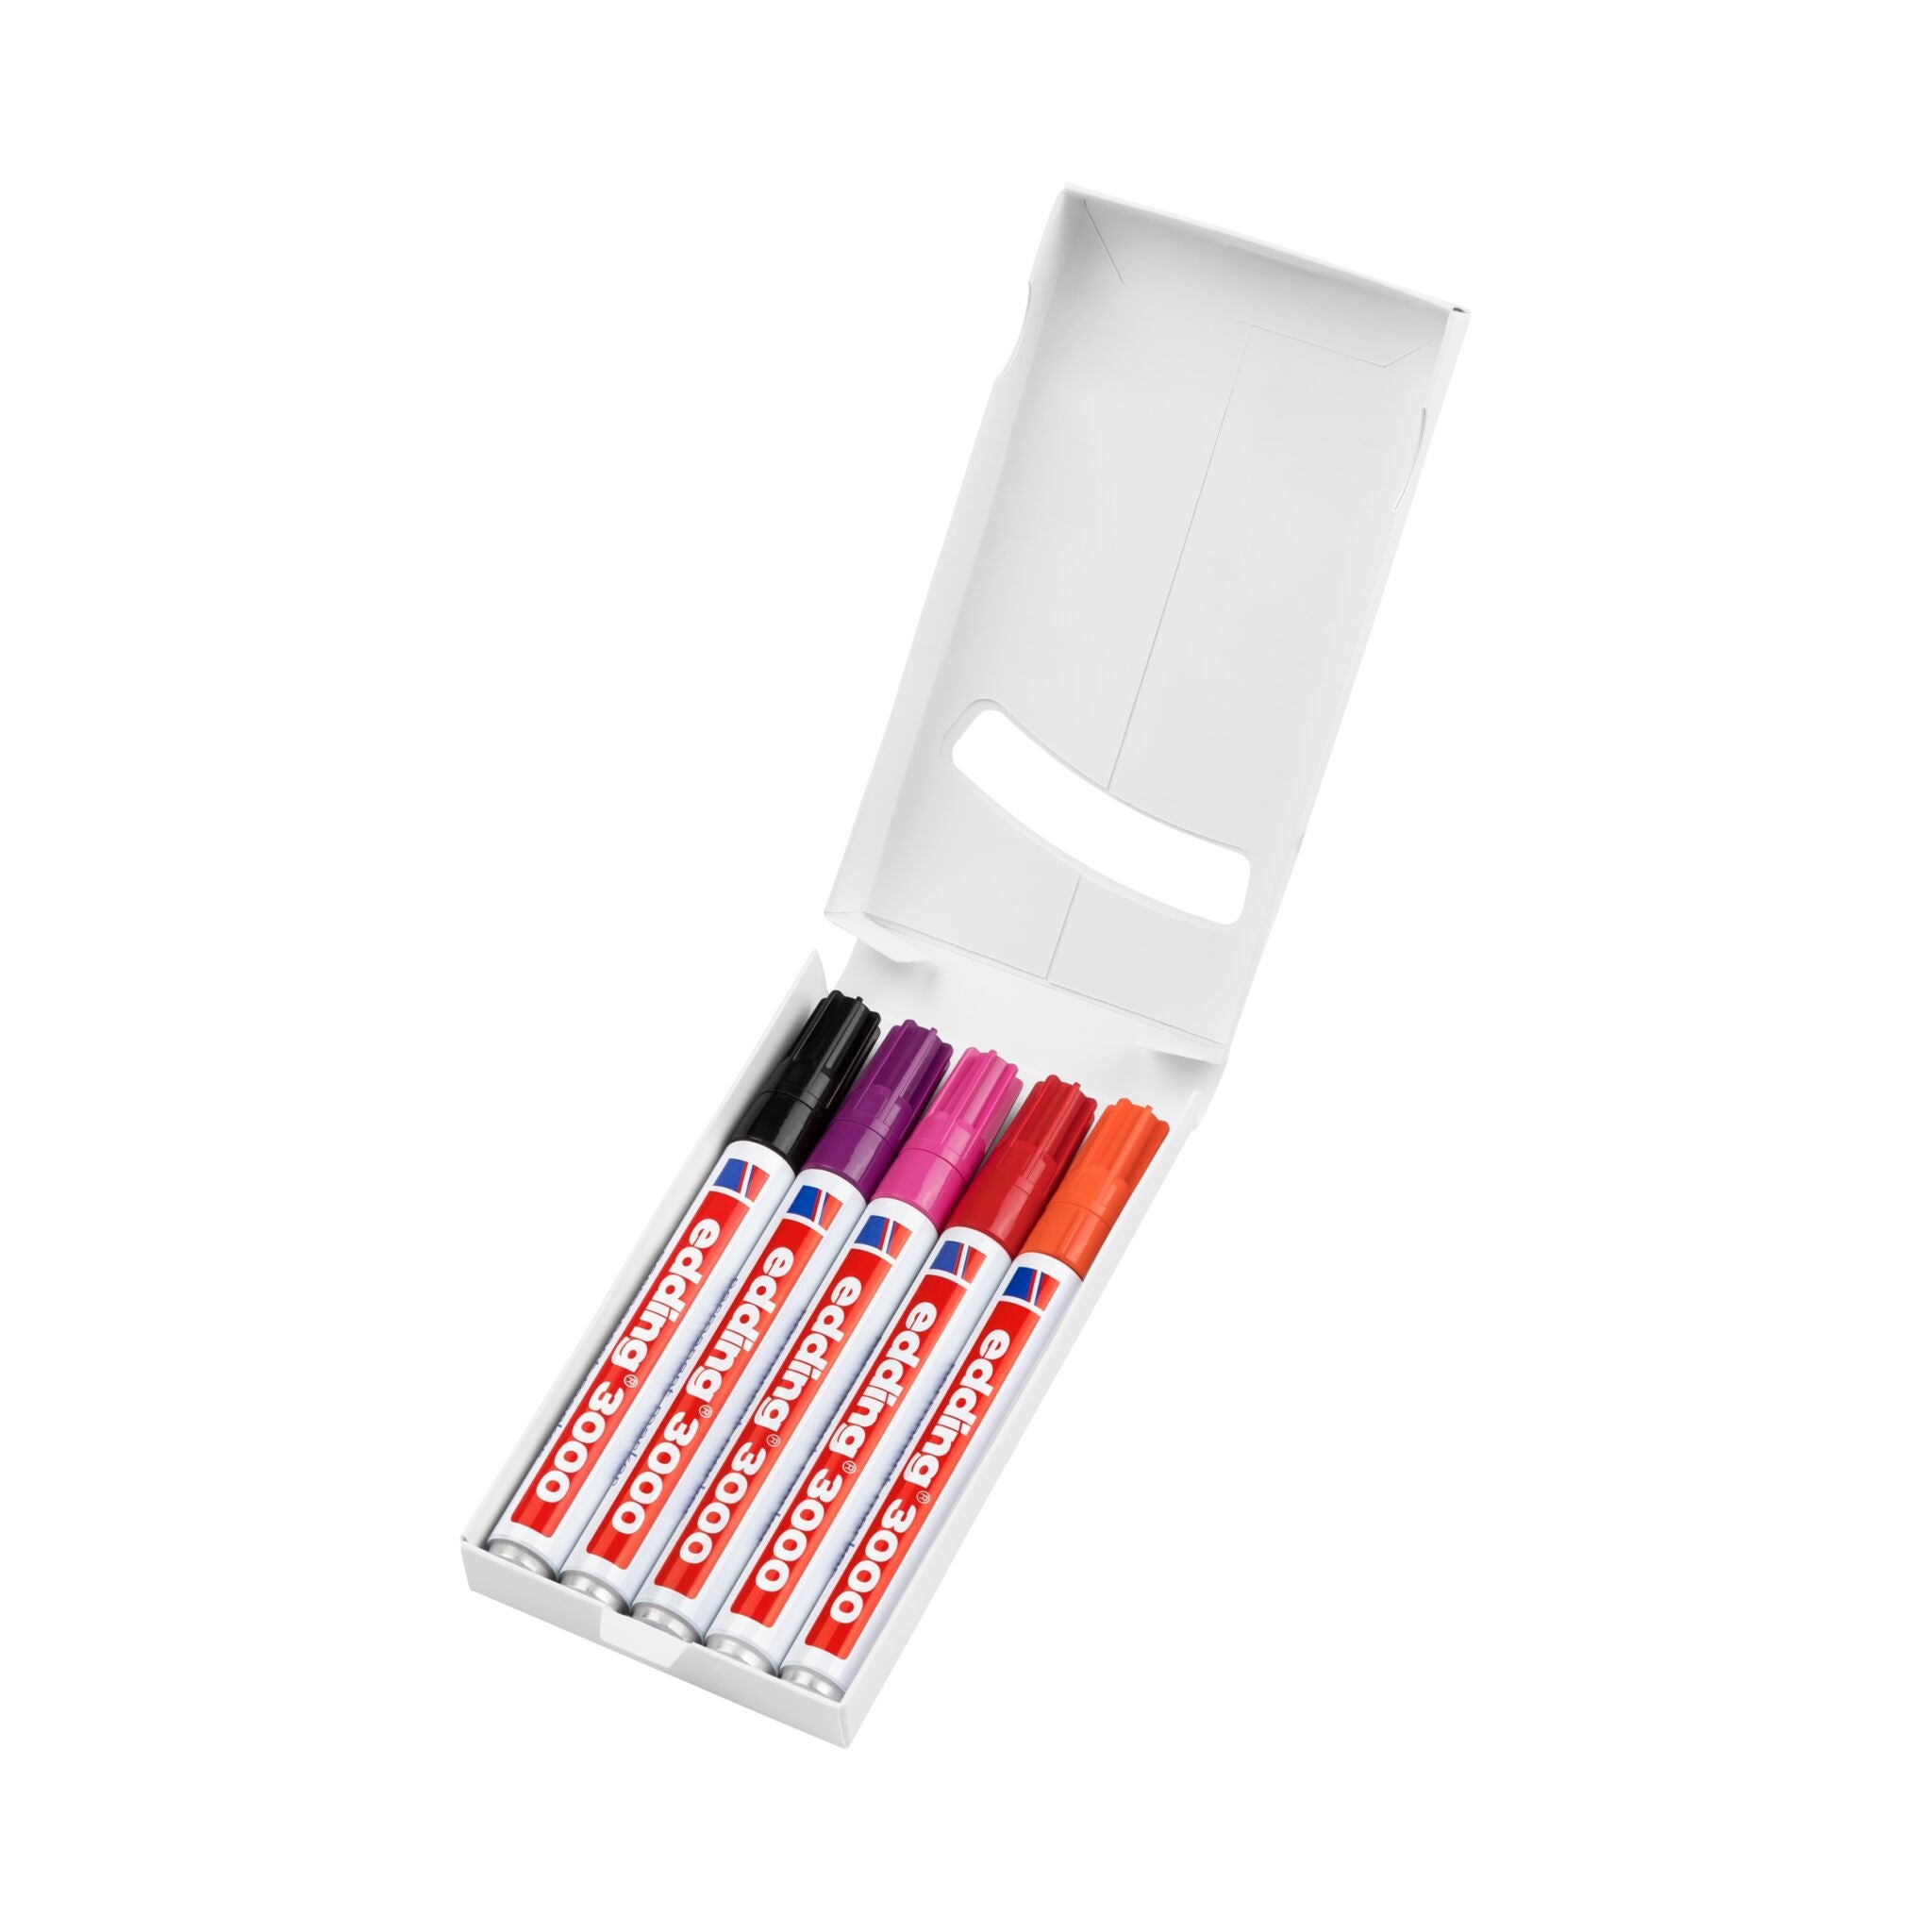 Ein Satz farbenfroher edding 3000 Permanentmarker im 5er-Set in einer weißen Box vor weißem Hintergrund.